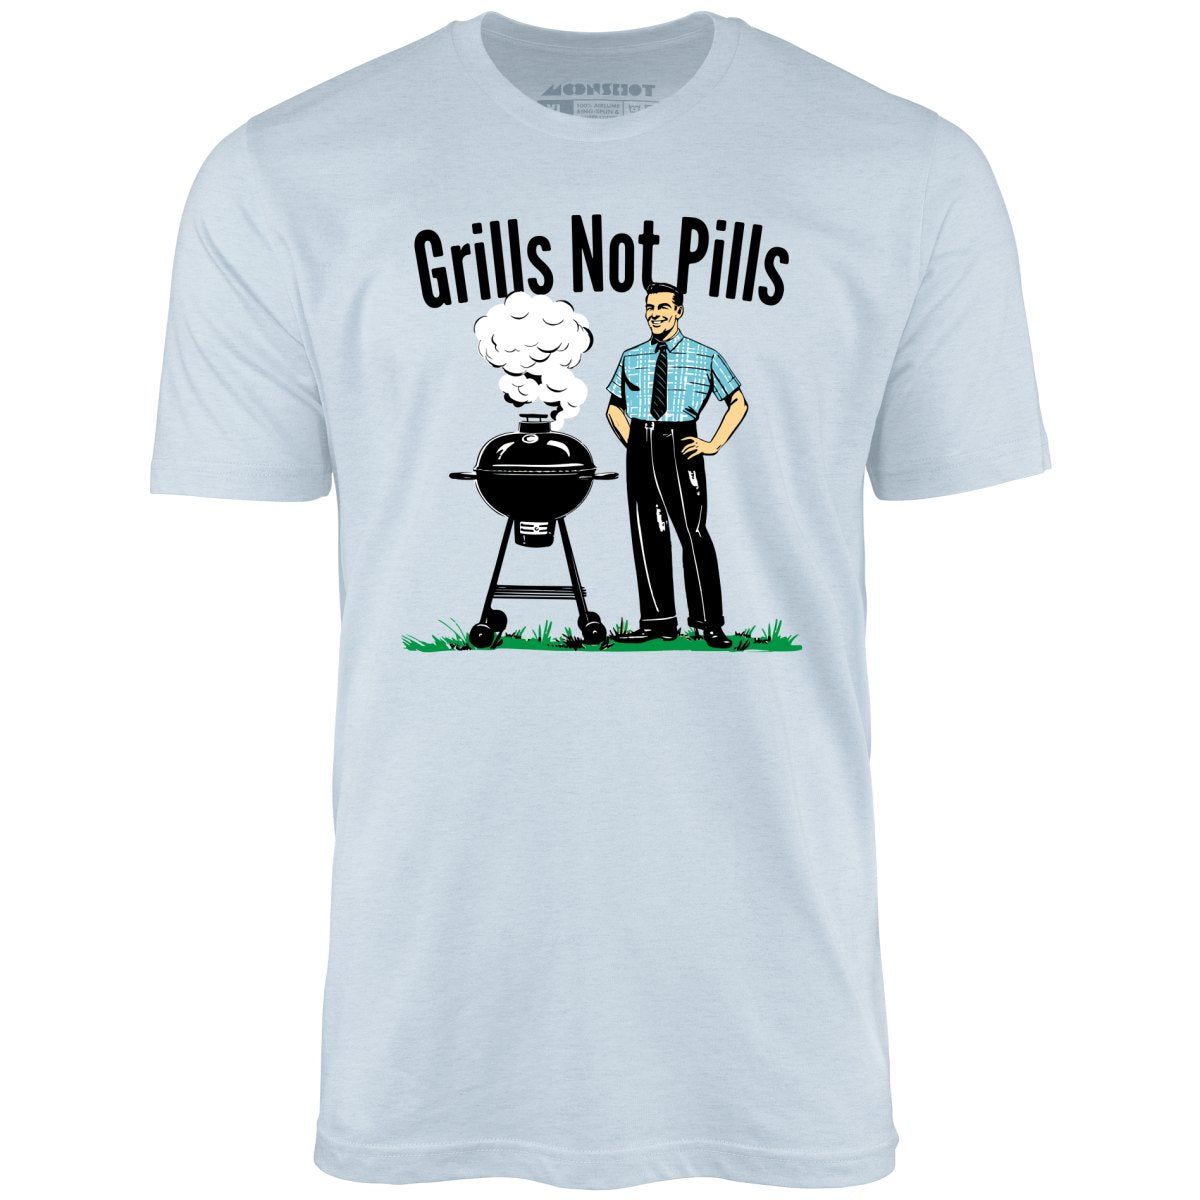 Grills Not Pills - Unisex T-Shirt